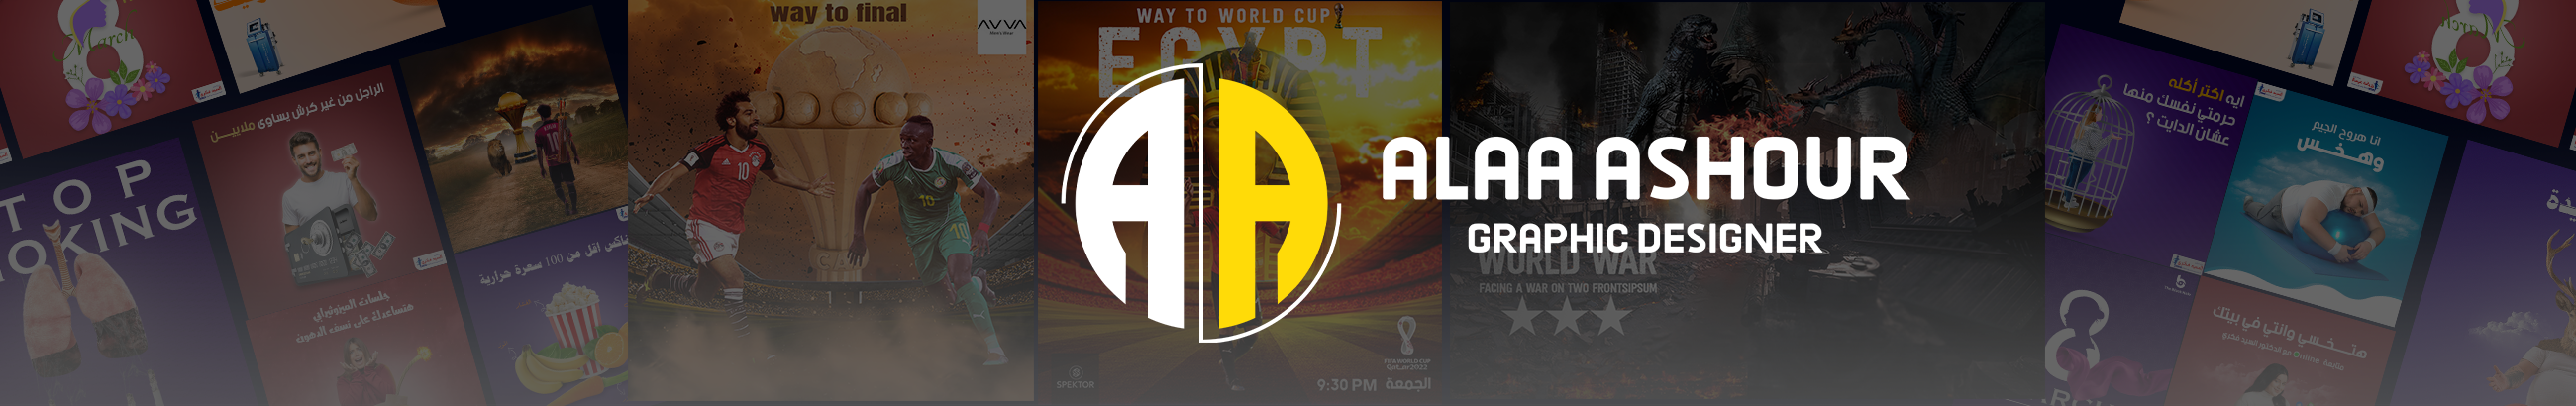 Bannière de profil de Alaa Ashour